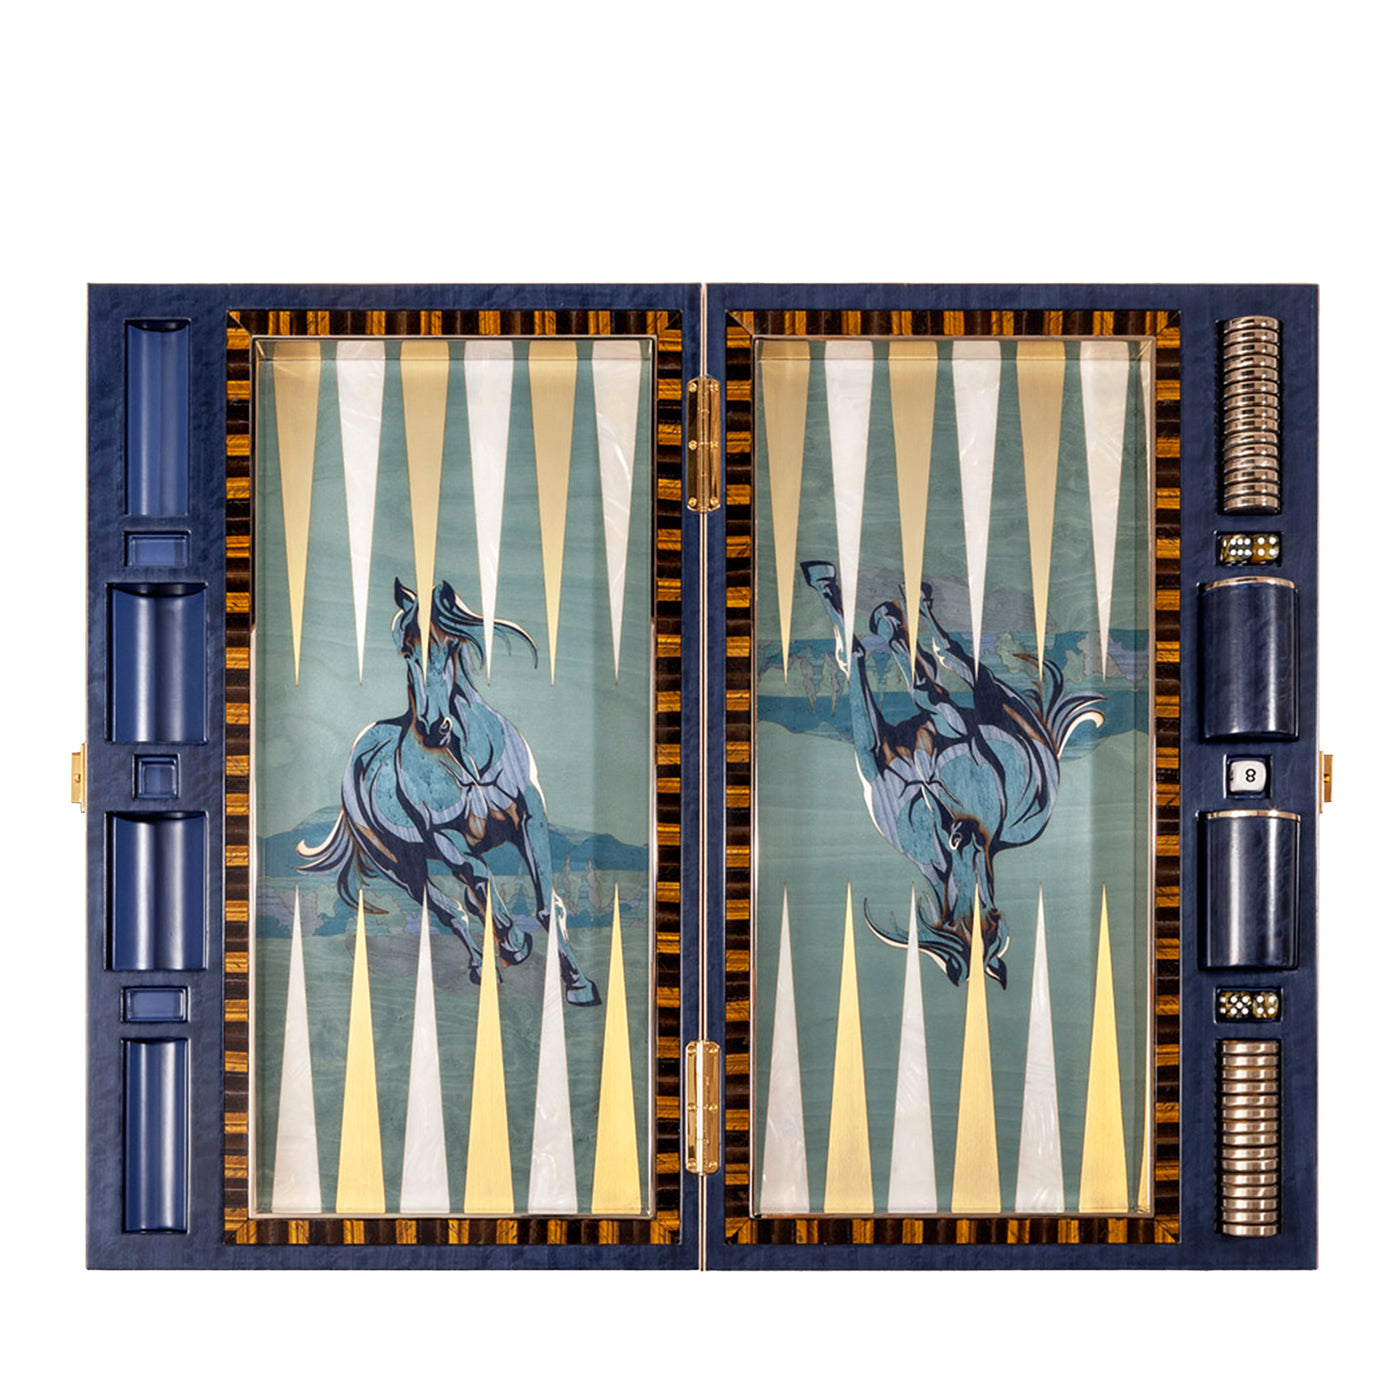 Kunstvoll eingelegtes polychromes Backgammon-Set von Fabio Calagna - Hauptansicht